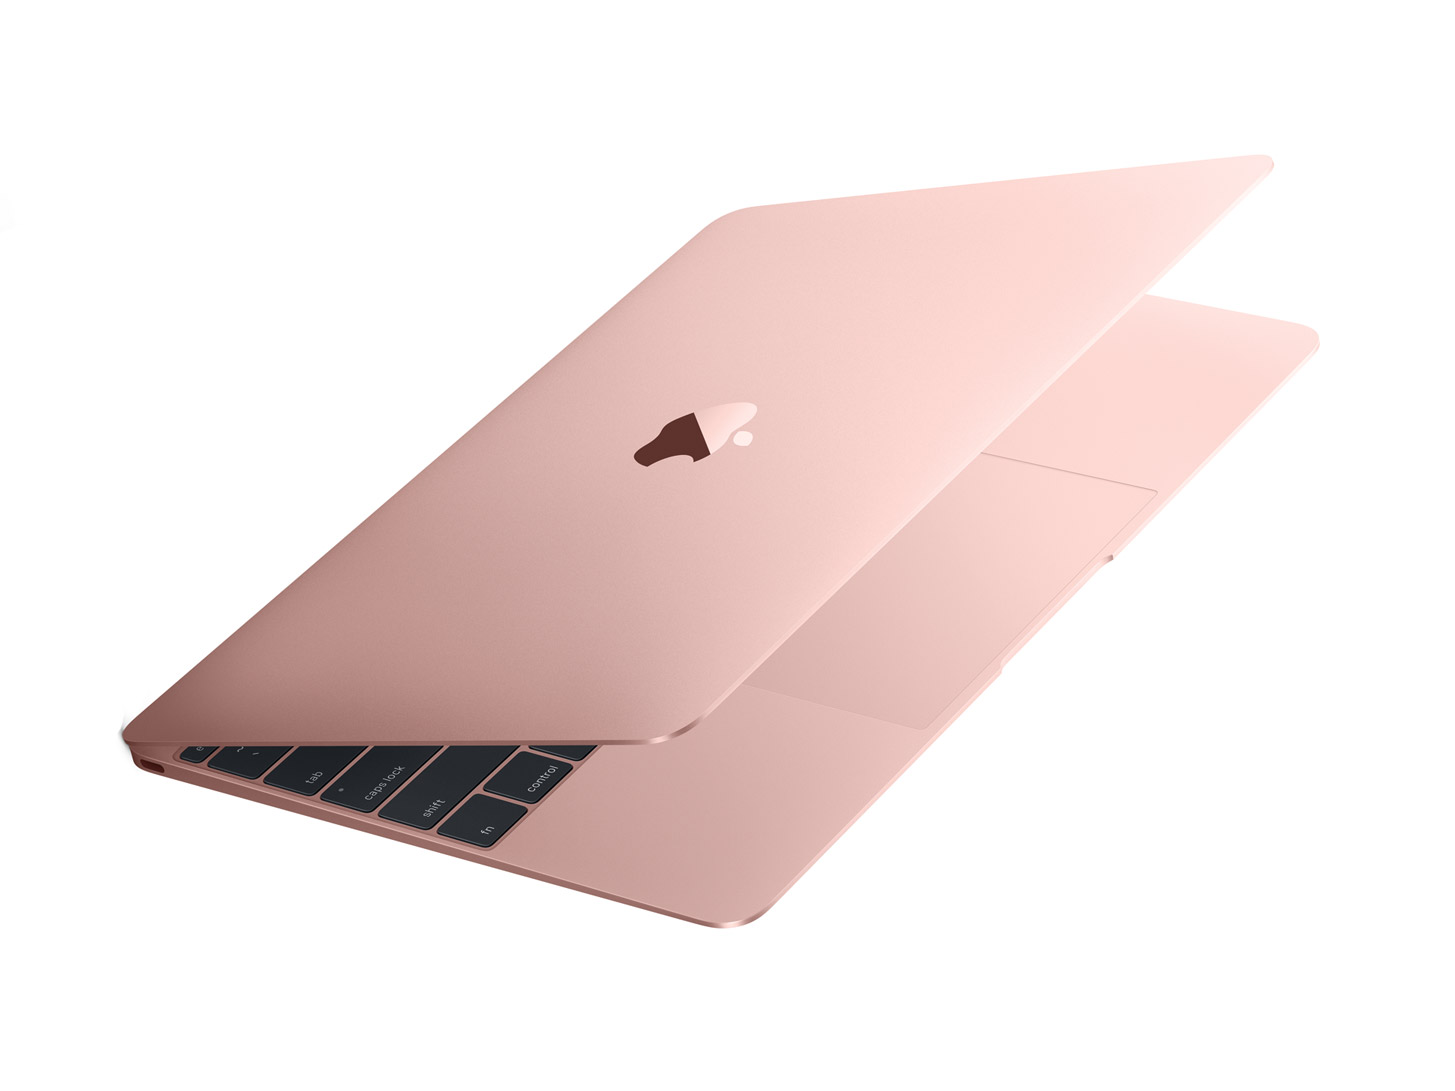 Hình ảnh MacBook thêm màu mới cấu hình khủng